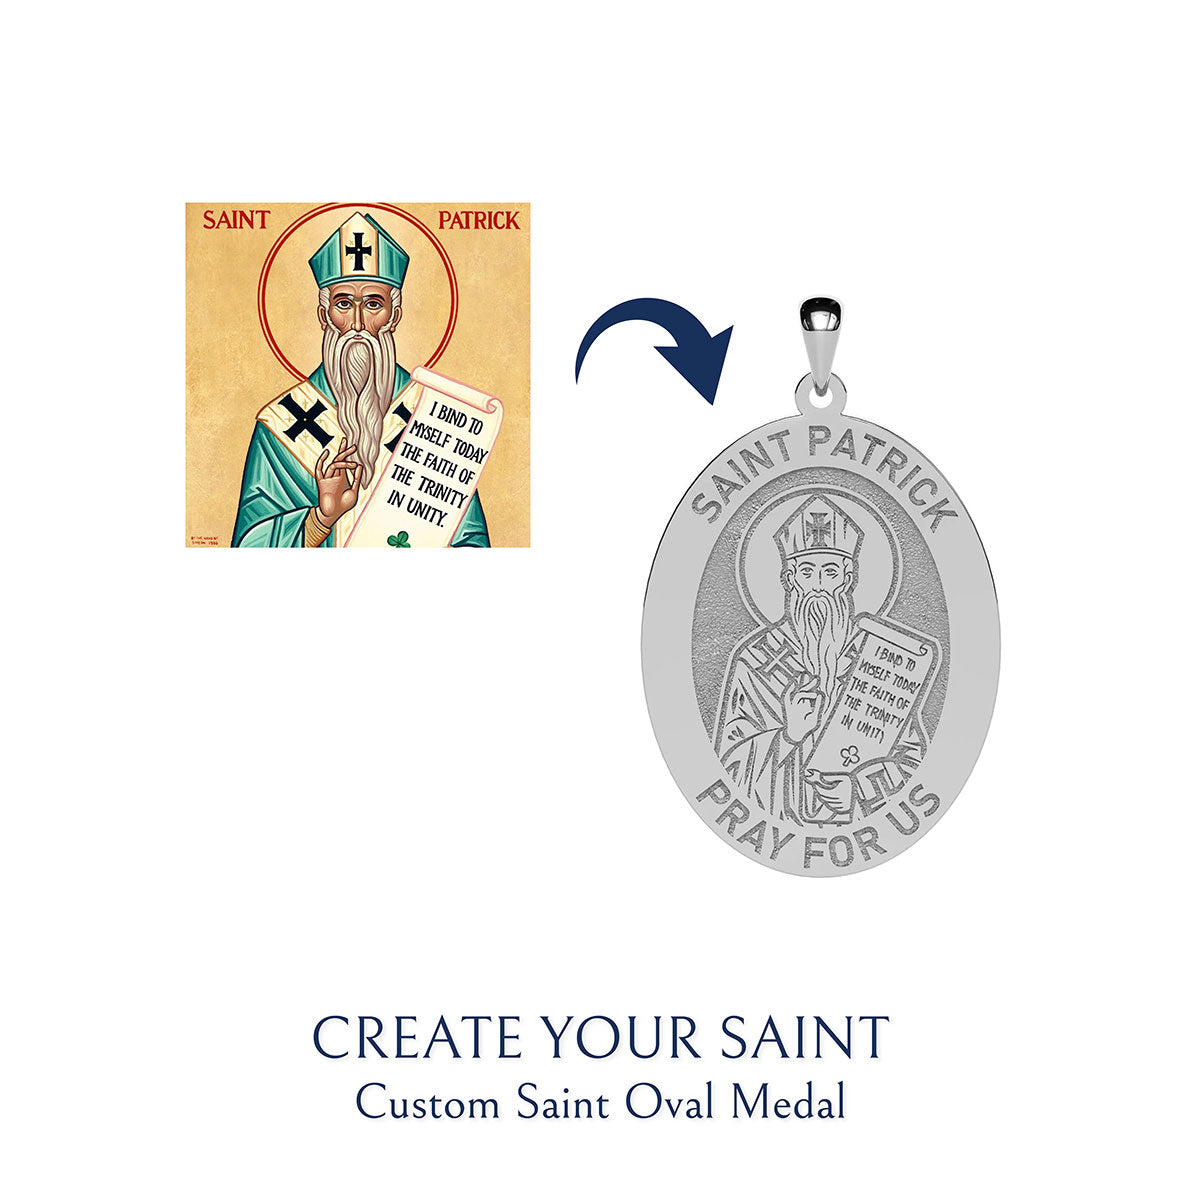 Create Your Saint - Custom Saint Oval Medal